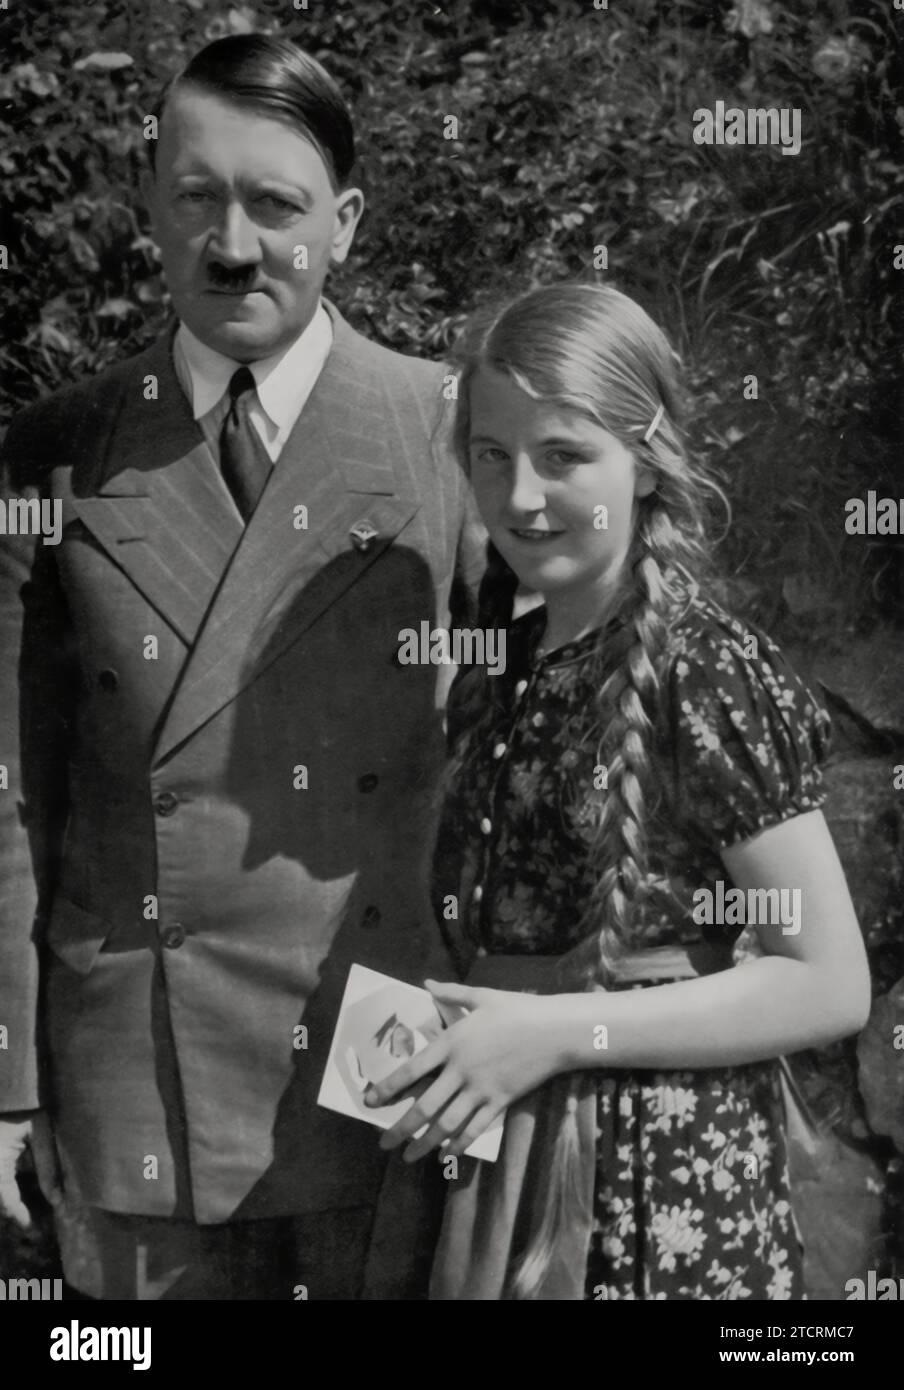 Nach einem Autogramm von Adolf Hitler hat ein junges Mädchen das Glück, sich mit ihm fotografieren zu lassen. Dieses Bild fängt einen persönlichen und propagandistischen Moment ein und zeigt Hitlers Interaktion mit der Jugend als Teil der Bemühungen des Regimes, ihn als wohlwollenden und zugänglichen Führer darzustellen. Solche inszenierten Begegnungen trugen entscheidend dazu bei, die öffentliche Wahrnehmung zu gestalten und ein Gefühl der persönlichen Verbindung zwischen Hitler und dem deutschen Volk, insbesondere der jüngeren Generation, zu fördern. Stockfoto